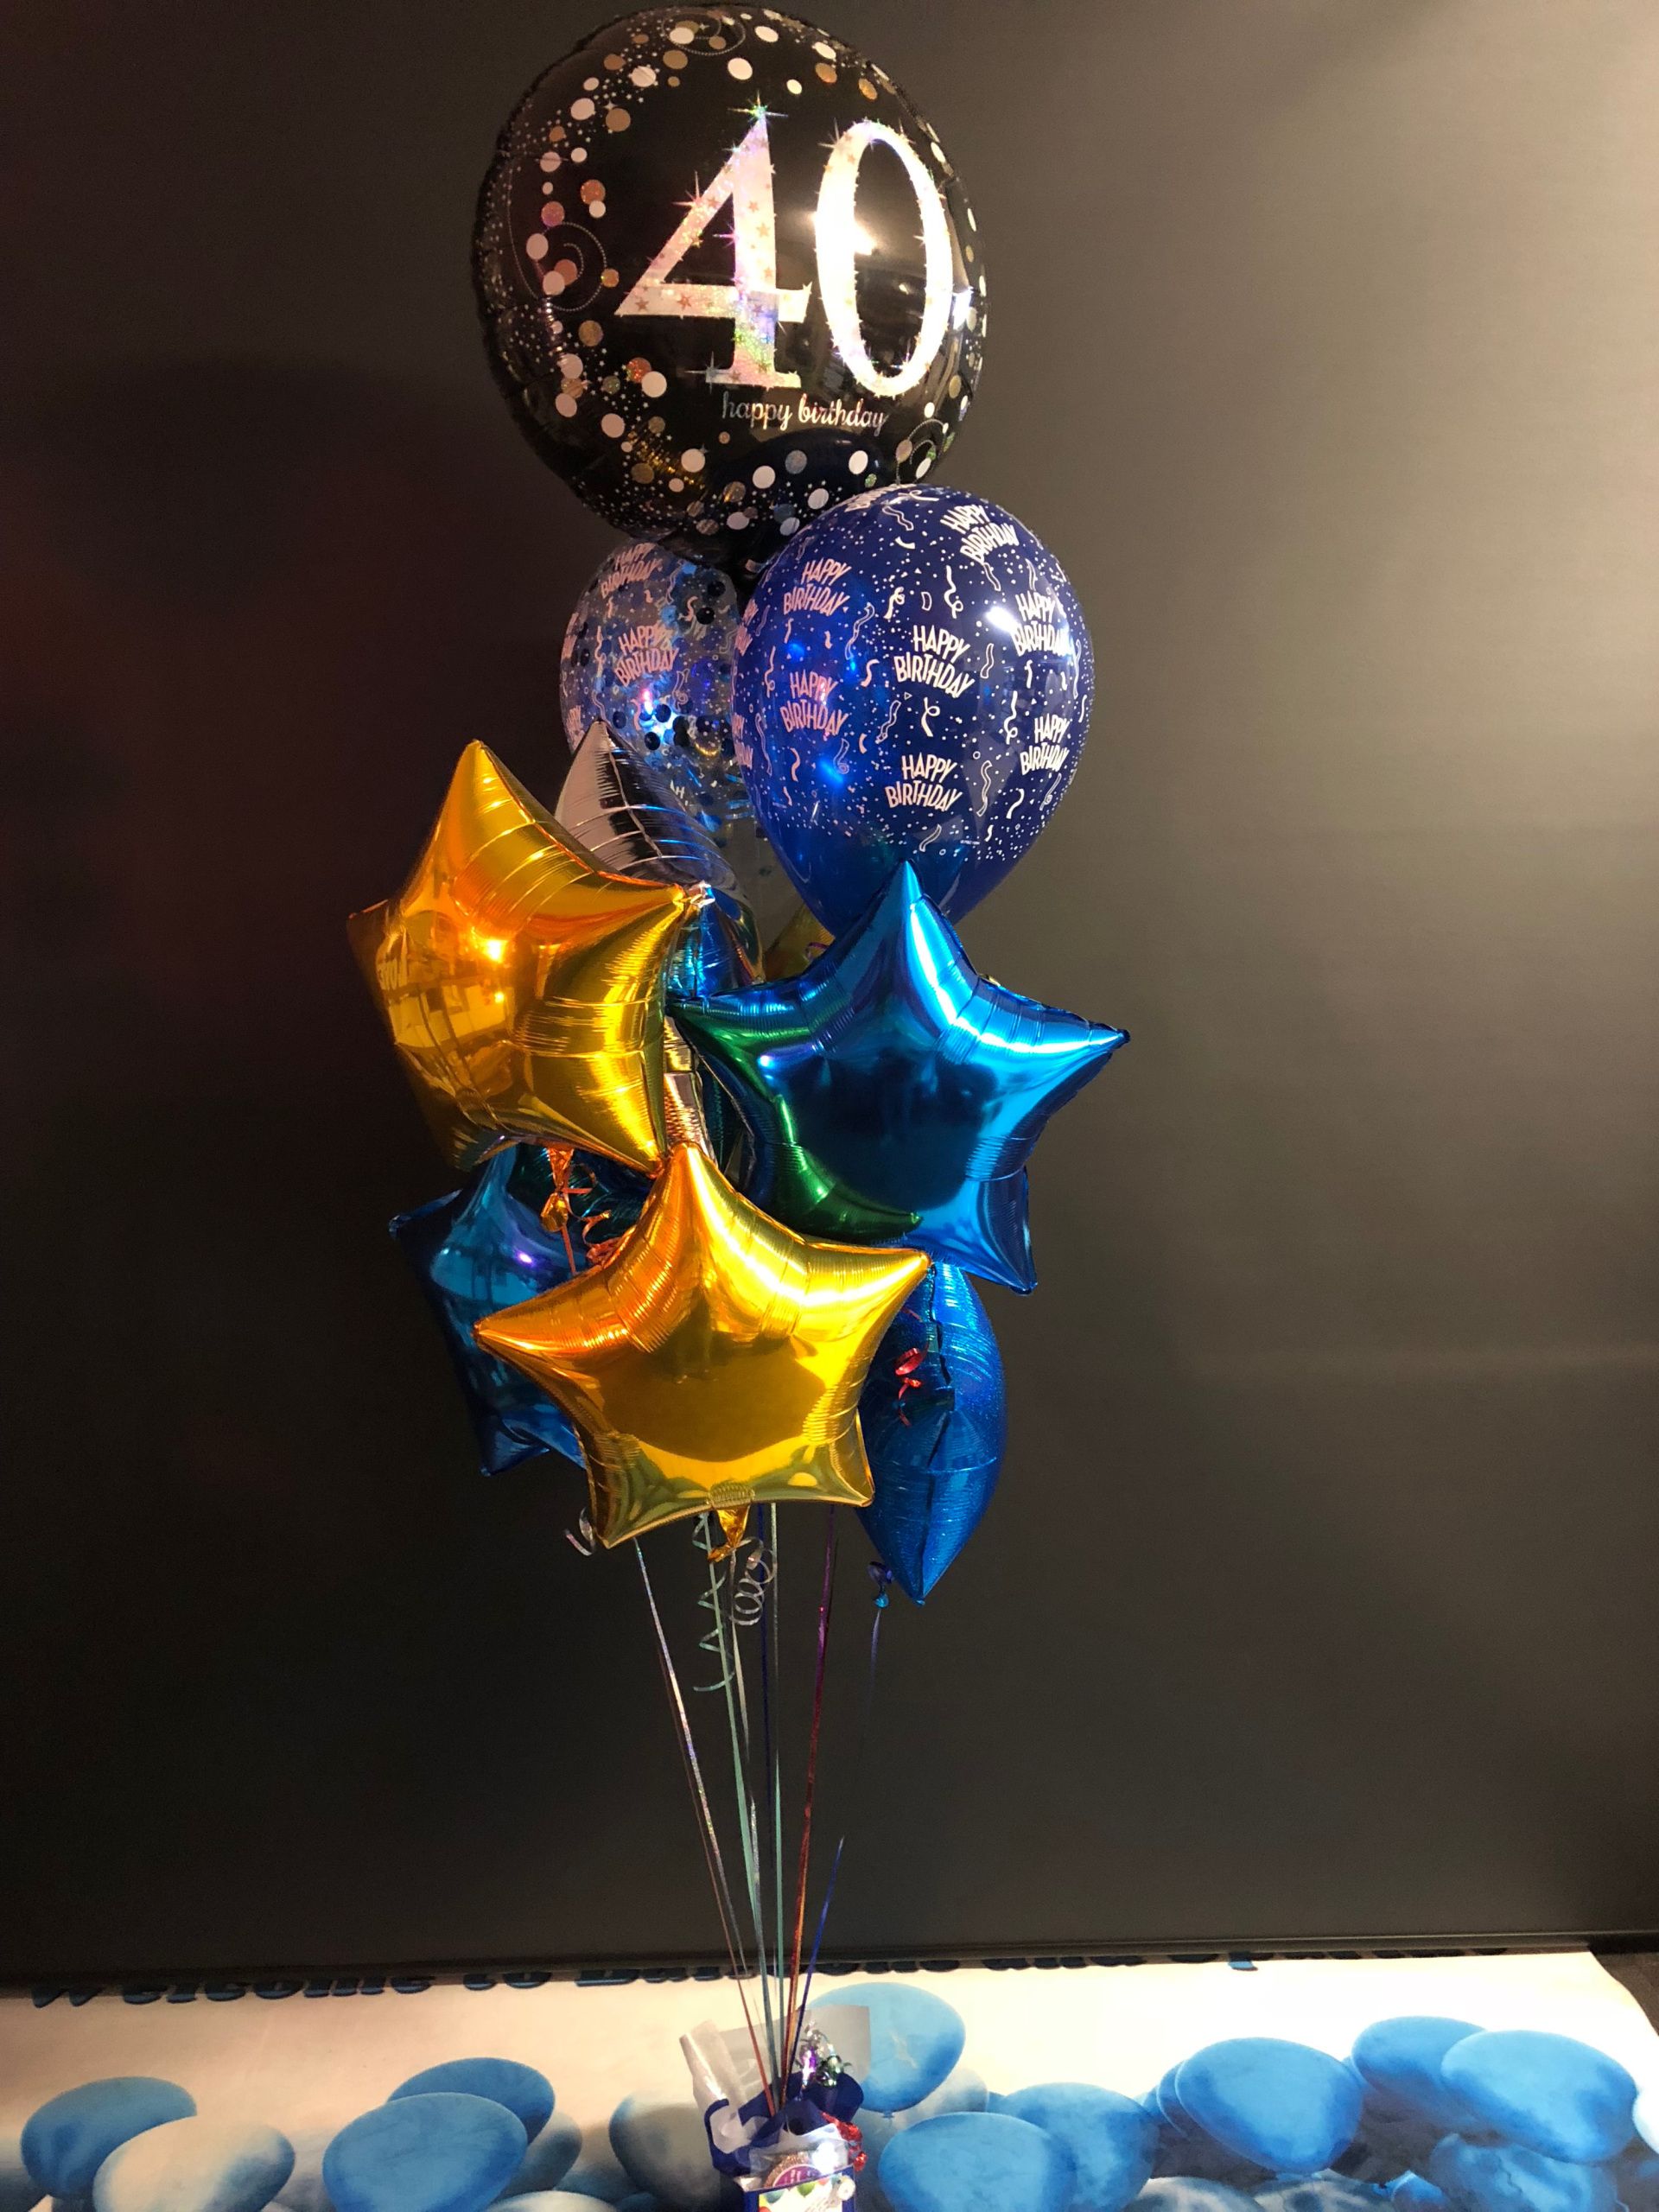 Stunning helium balloon bouquet to make a statement